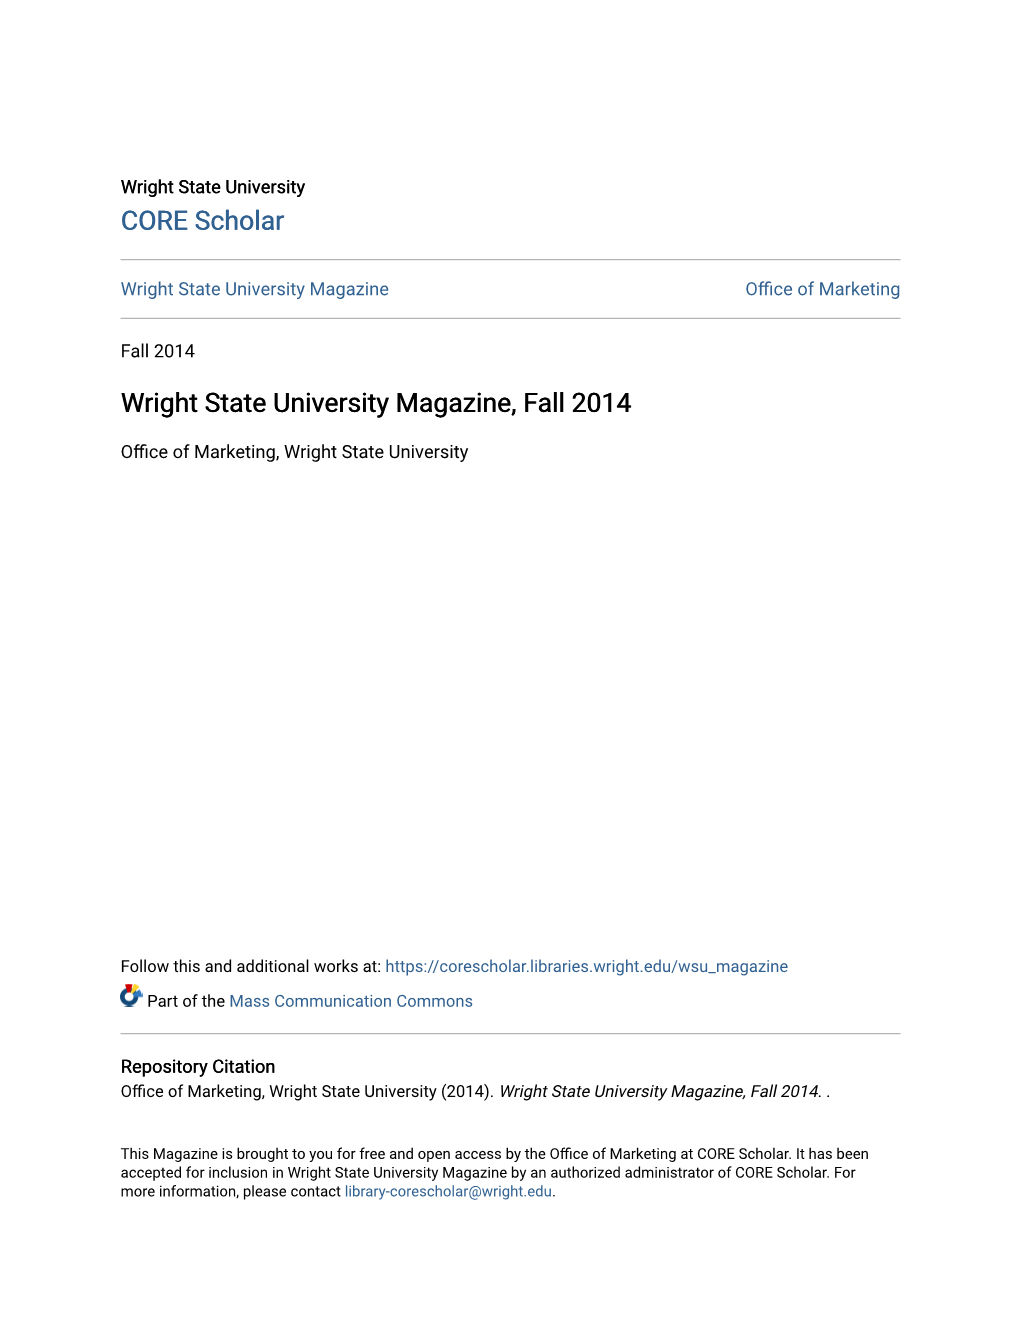 Wright State University Magazine, Fall 2014